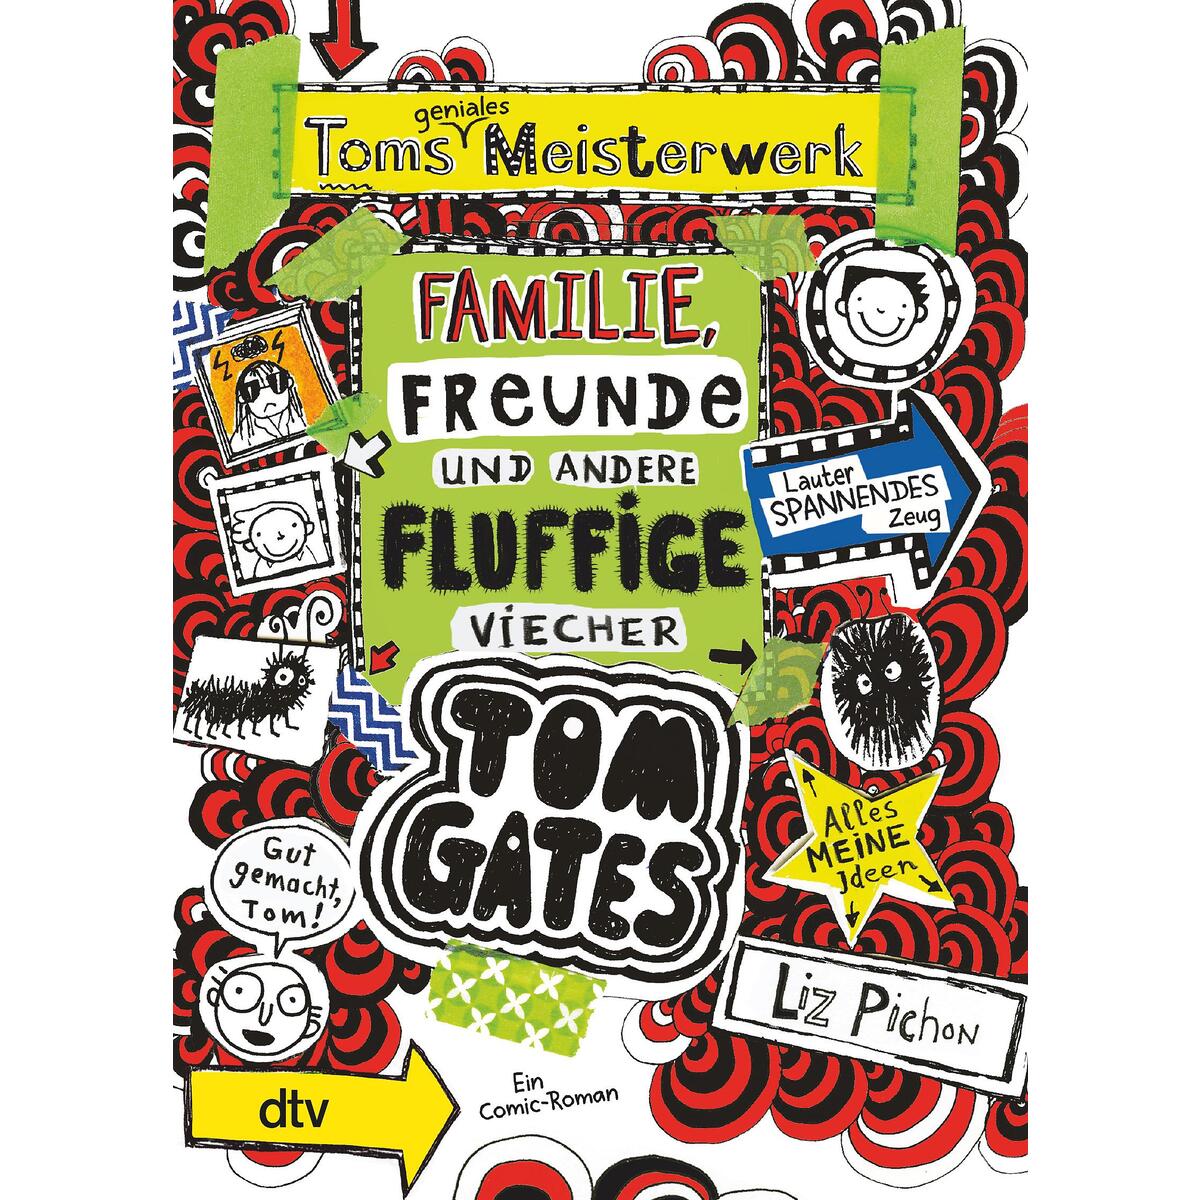 Tom Gates 12: Toms geniales Meisterwerk (Familie, Freunde und andere fluffige Vi... von dtv Verlagsgesellschaft